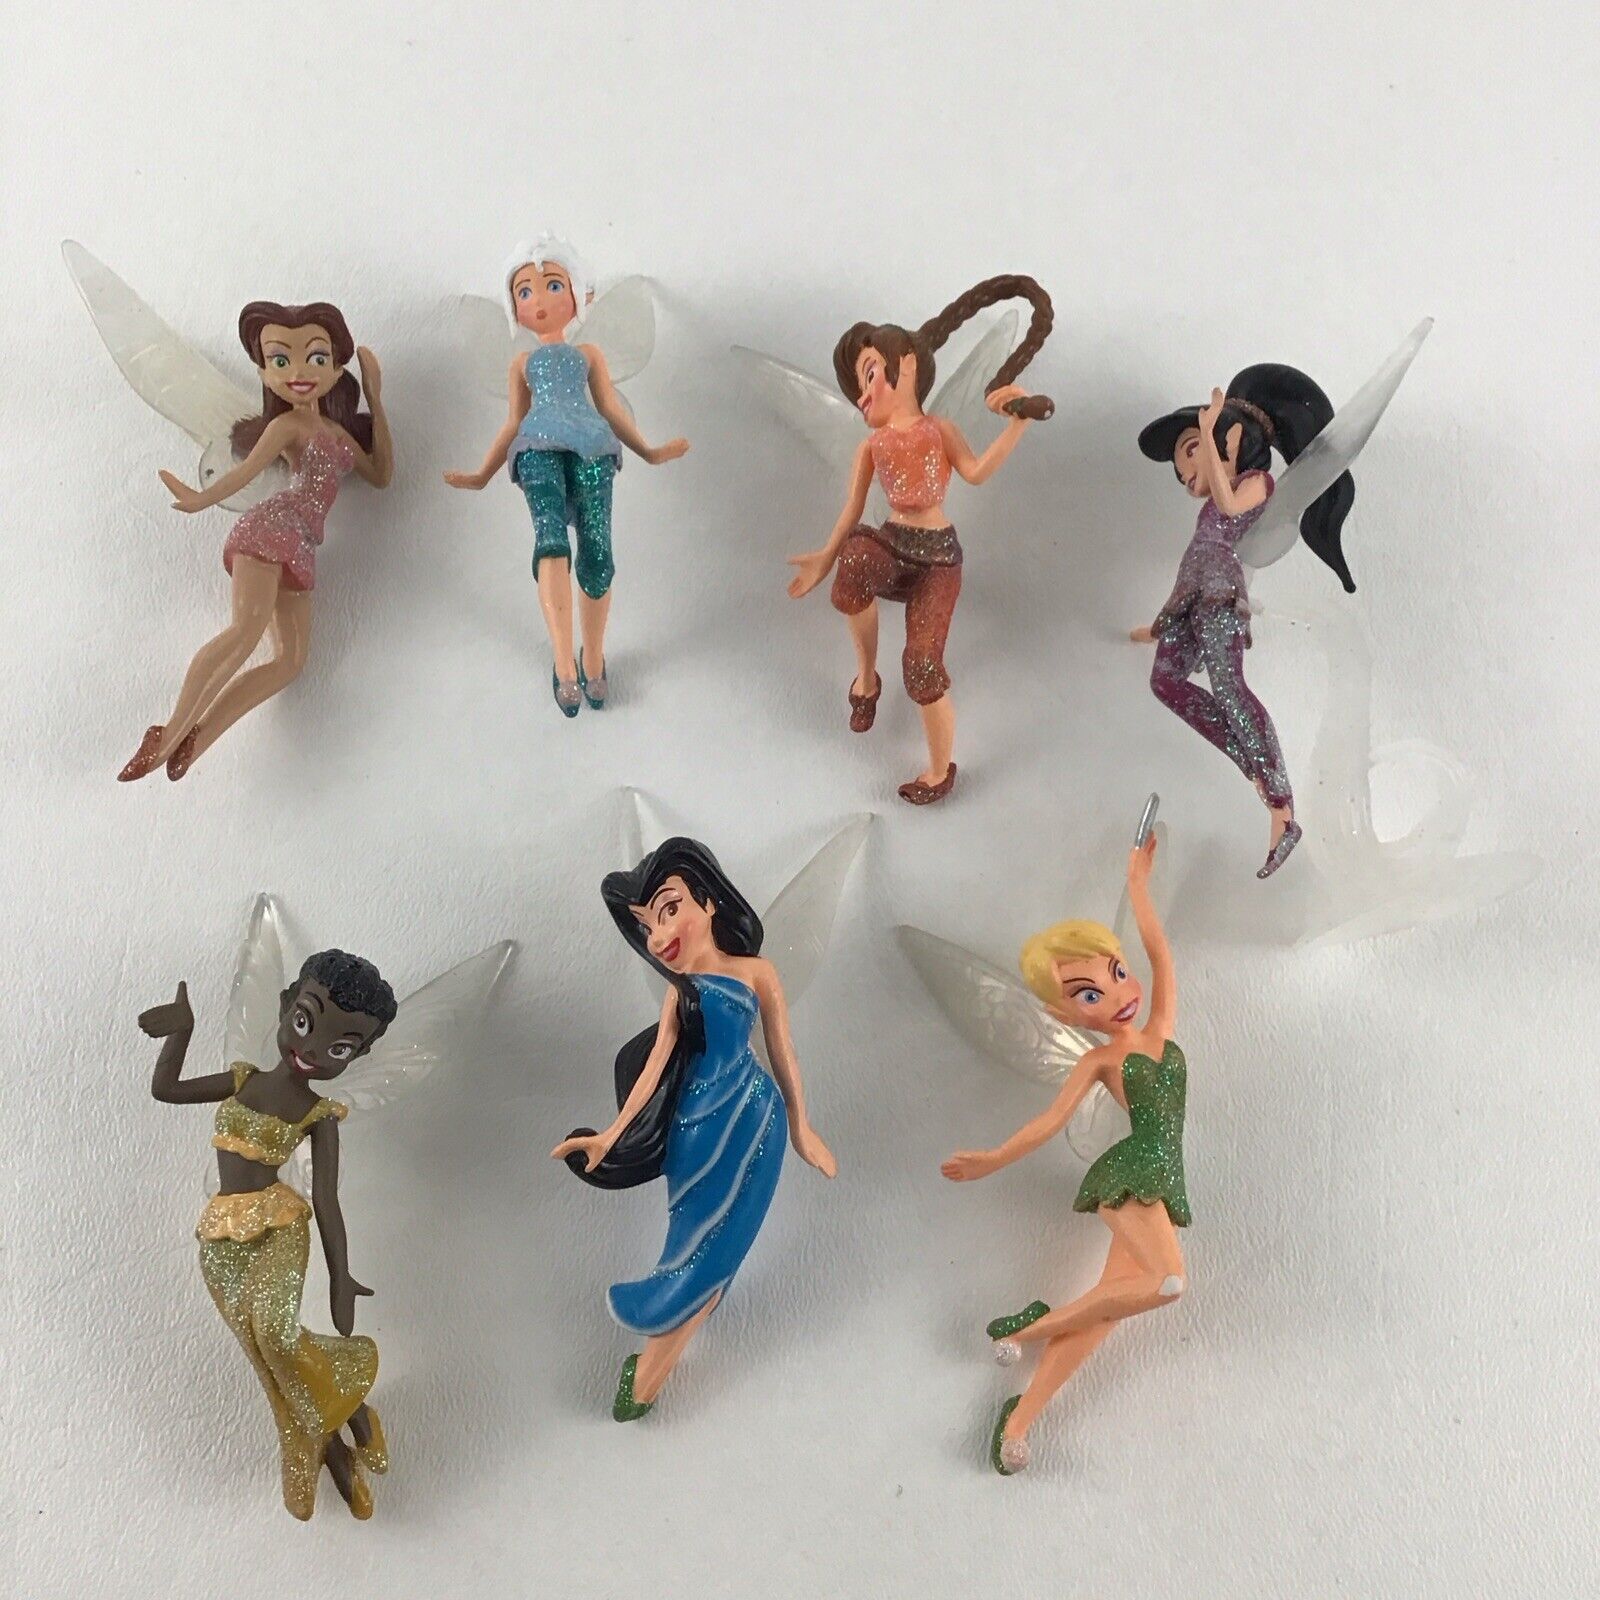 Disney Fairies Pixie Hollow Figures Rosetta Iridessa Fawn Tinker Bell Silvermist